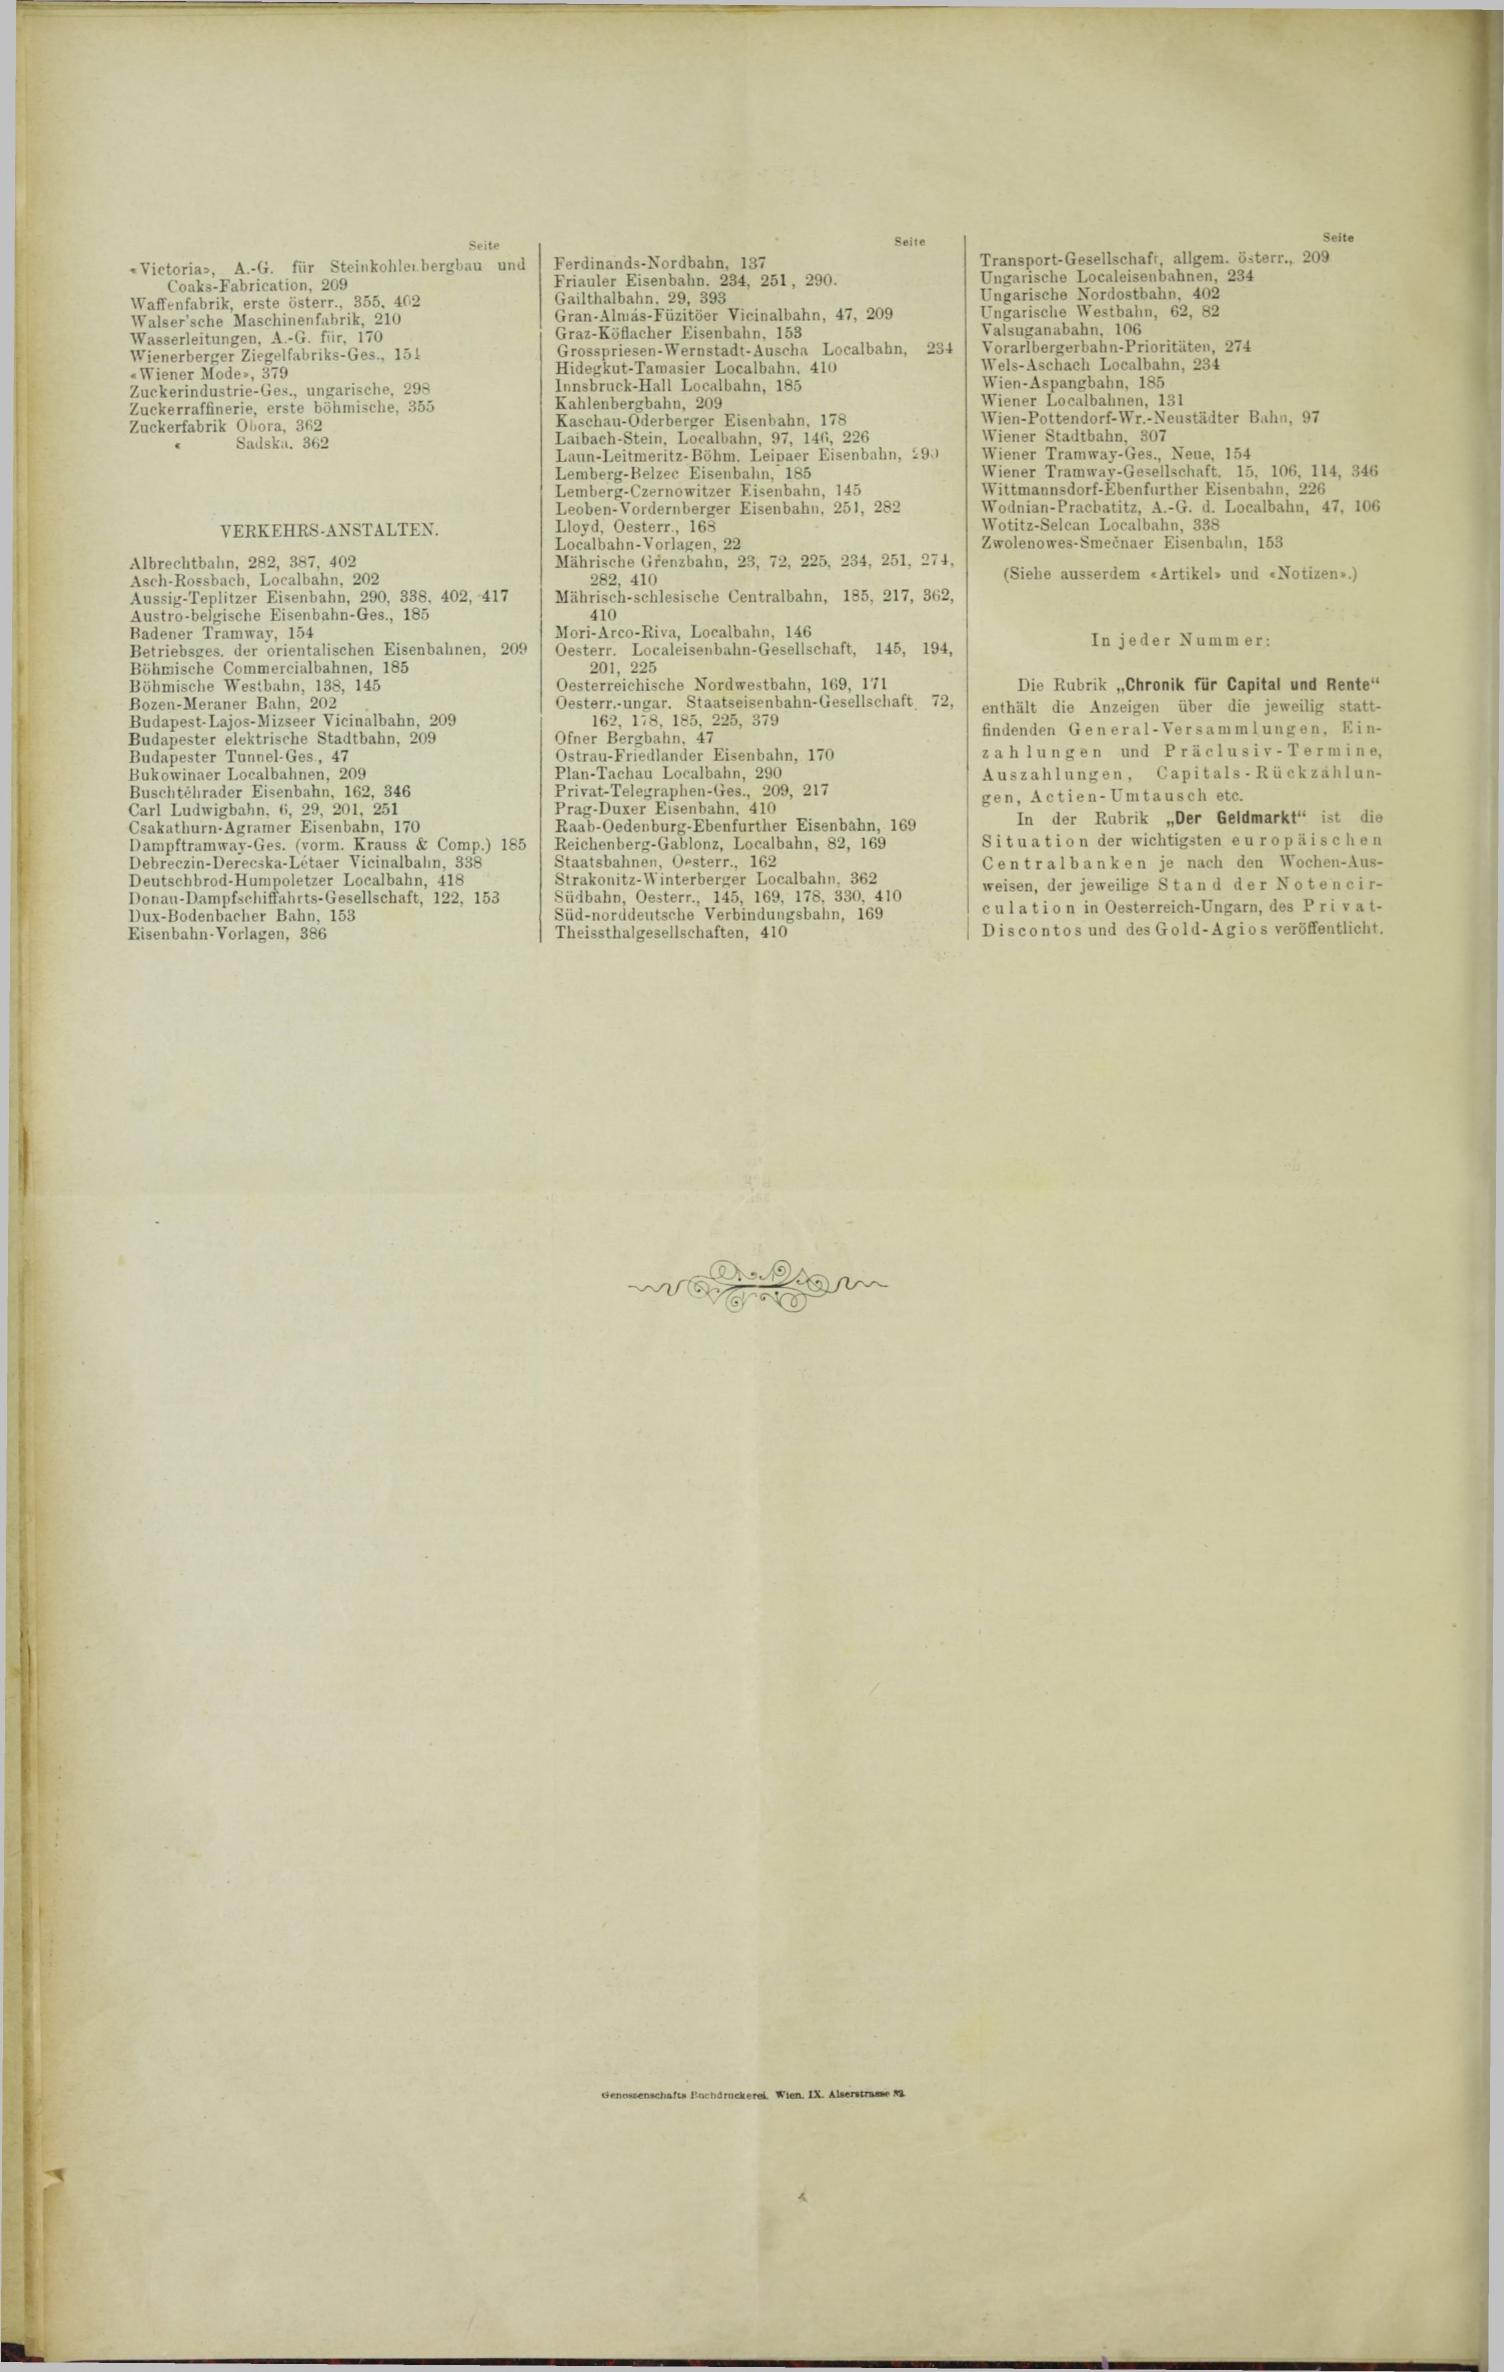 Der Tresor 16.02.1893 - Seite 12